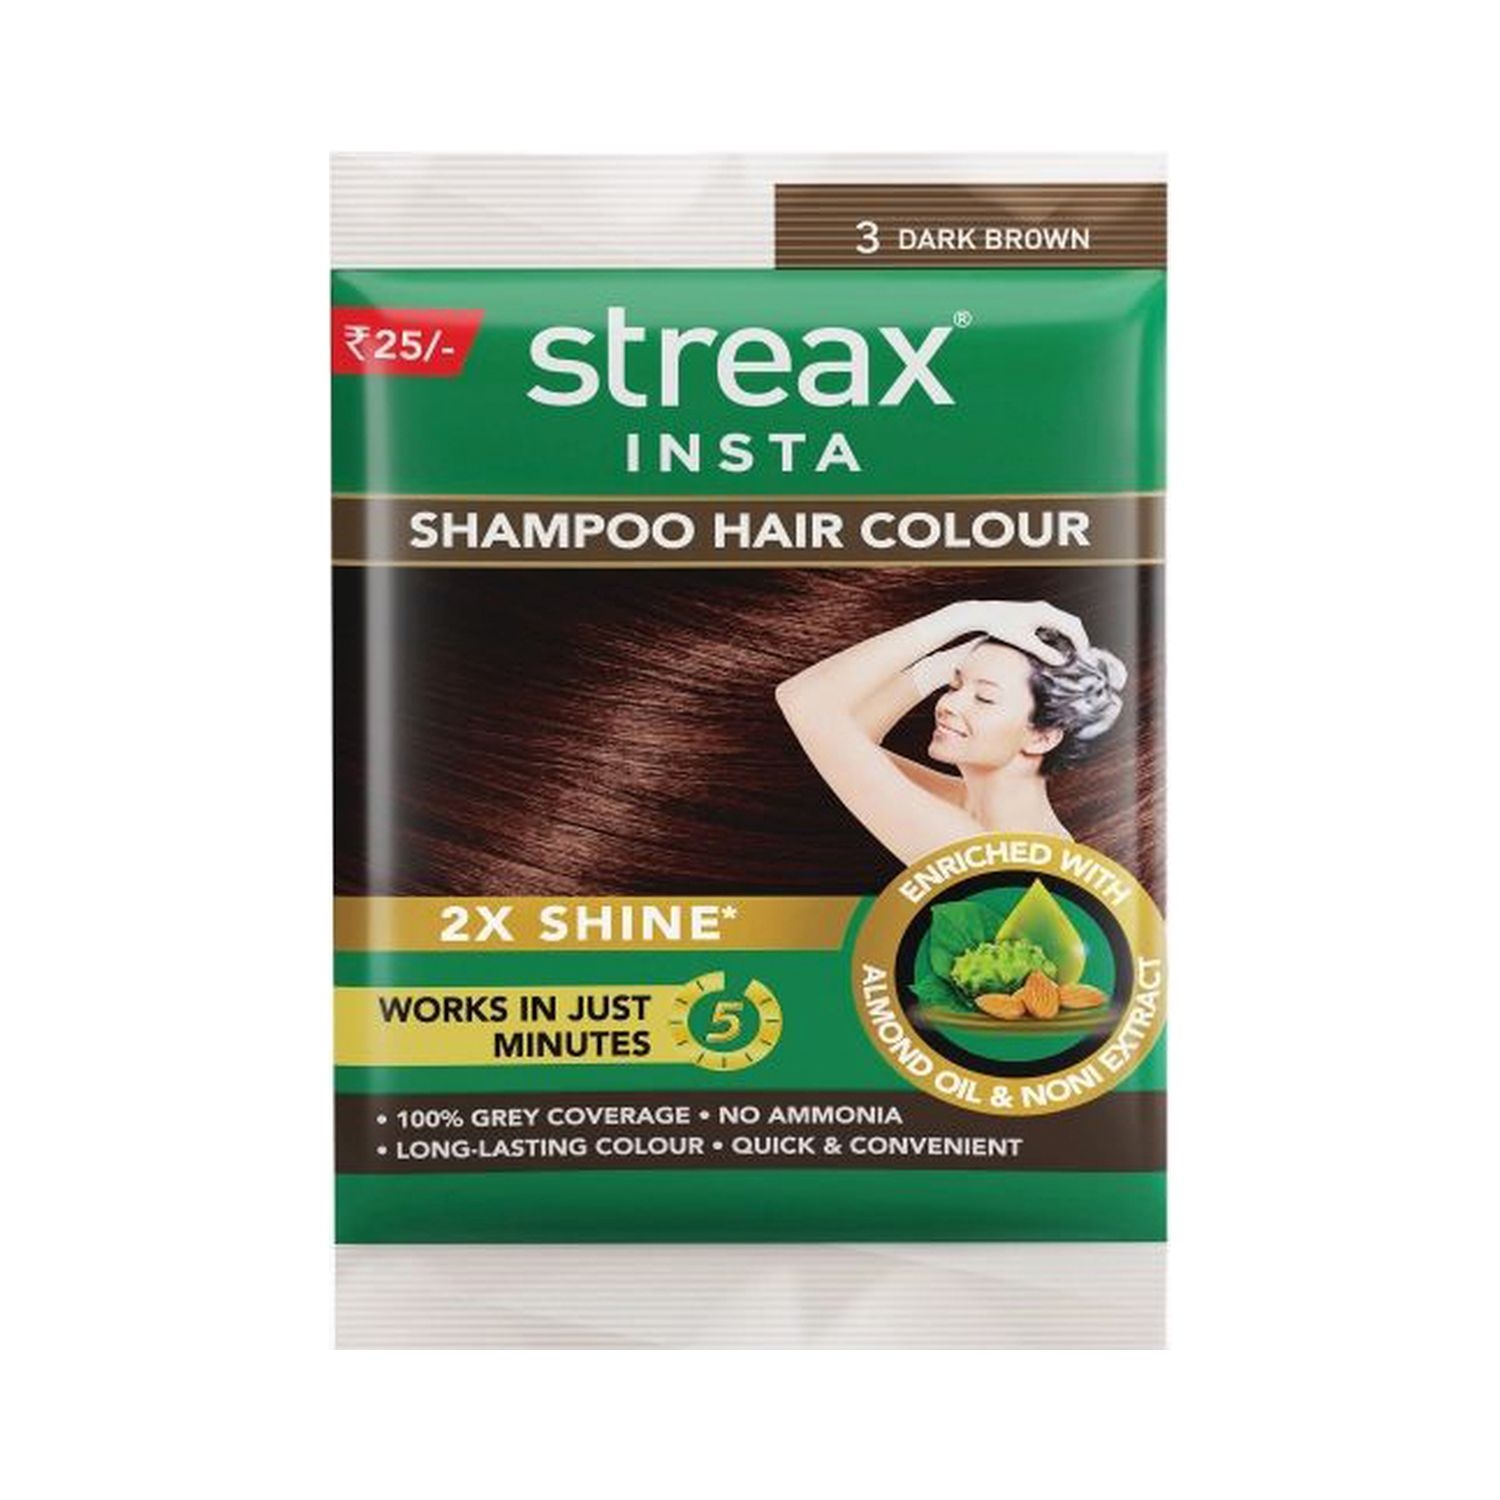 Streax | Streax Insta Shampoo Hair Colour - 3 Dark Brown (18ml)